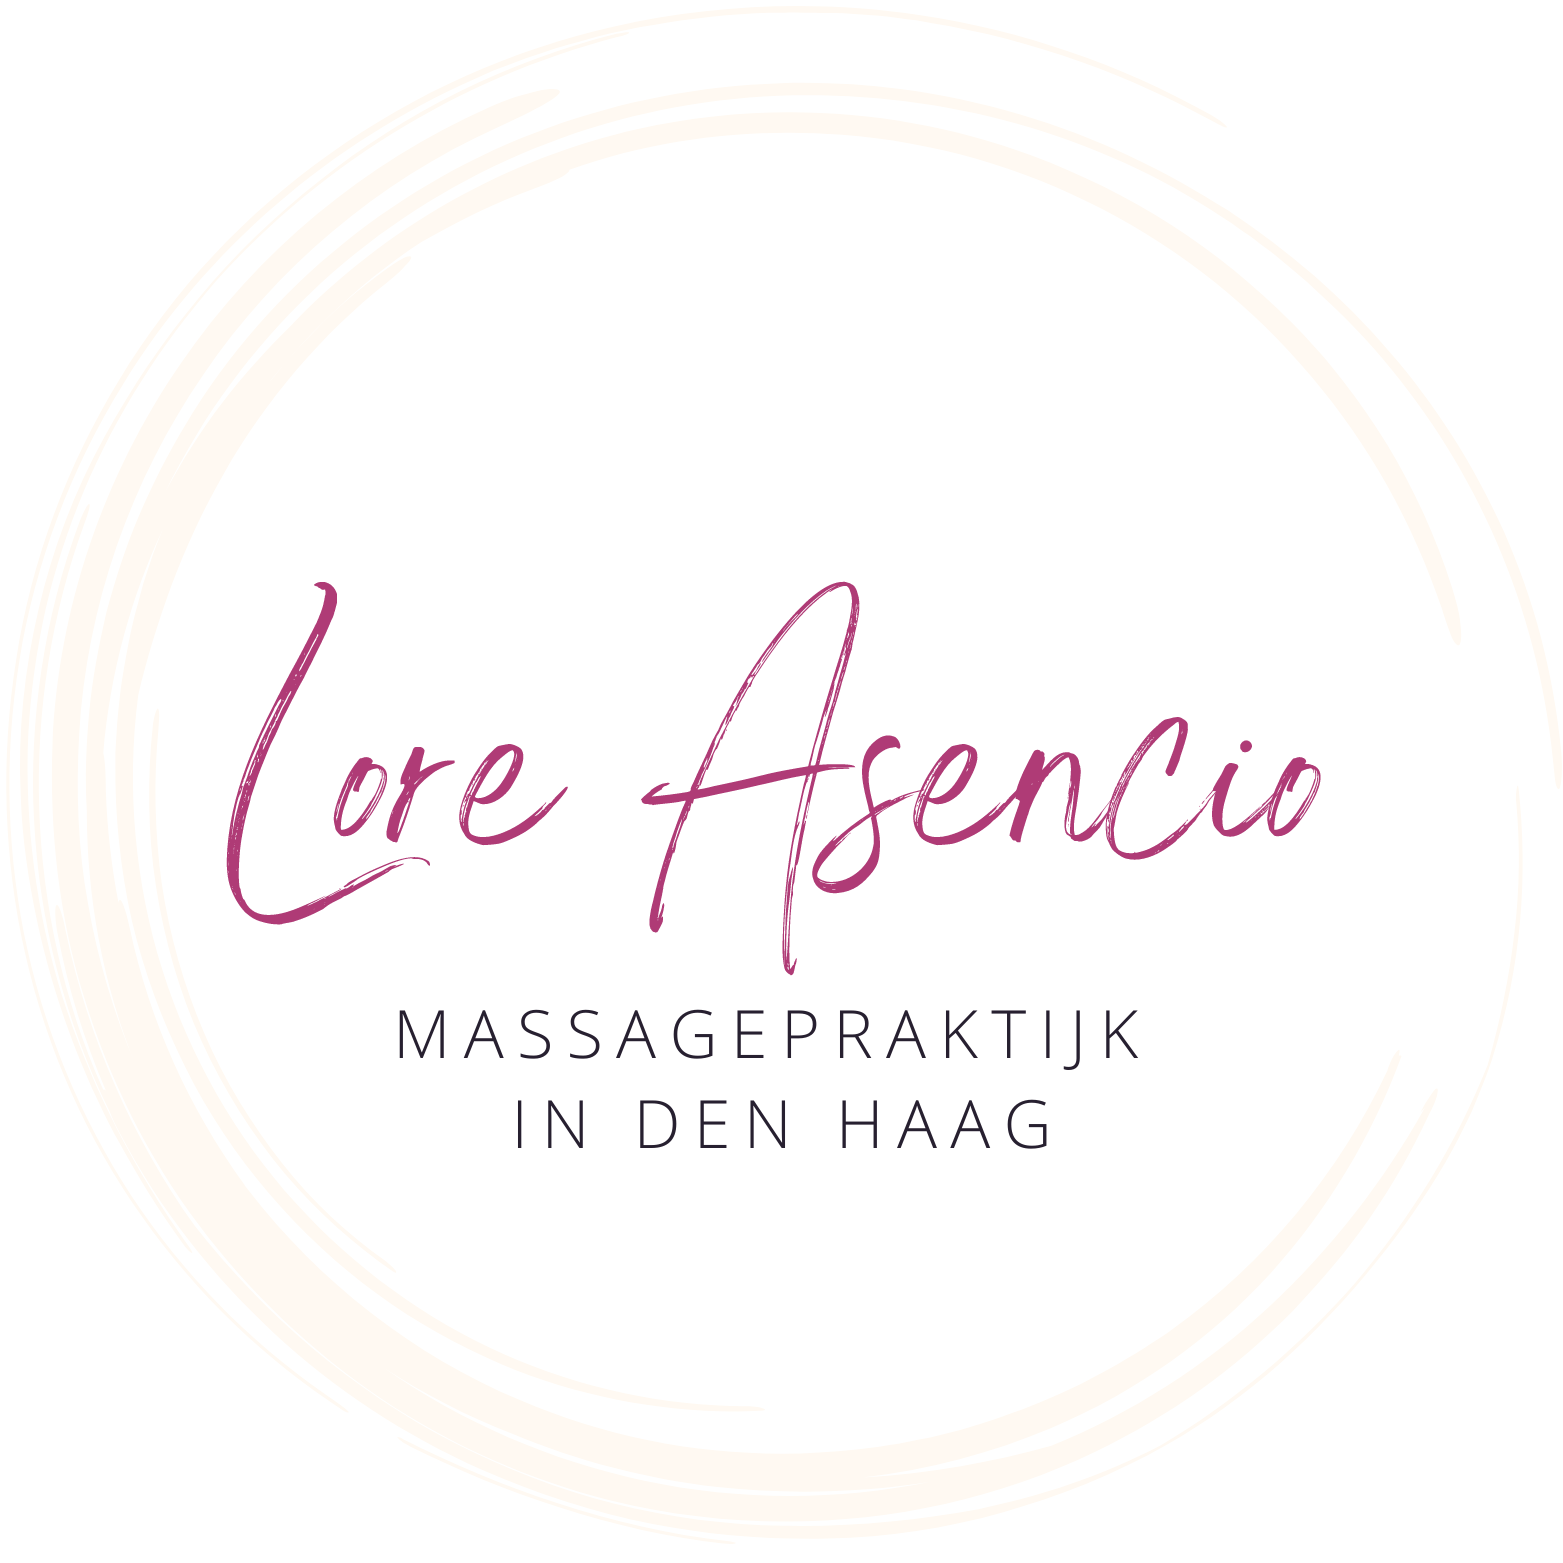 Massagepraktijk Lore Asencio - alleen voor vrouwen logo